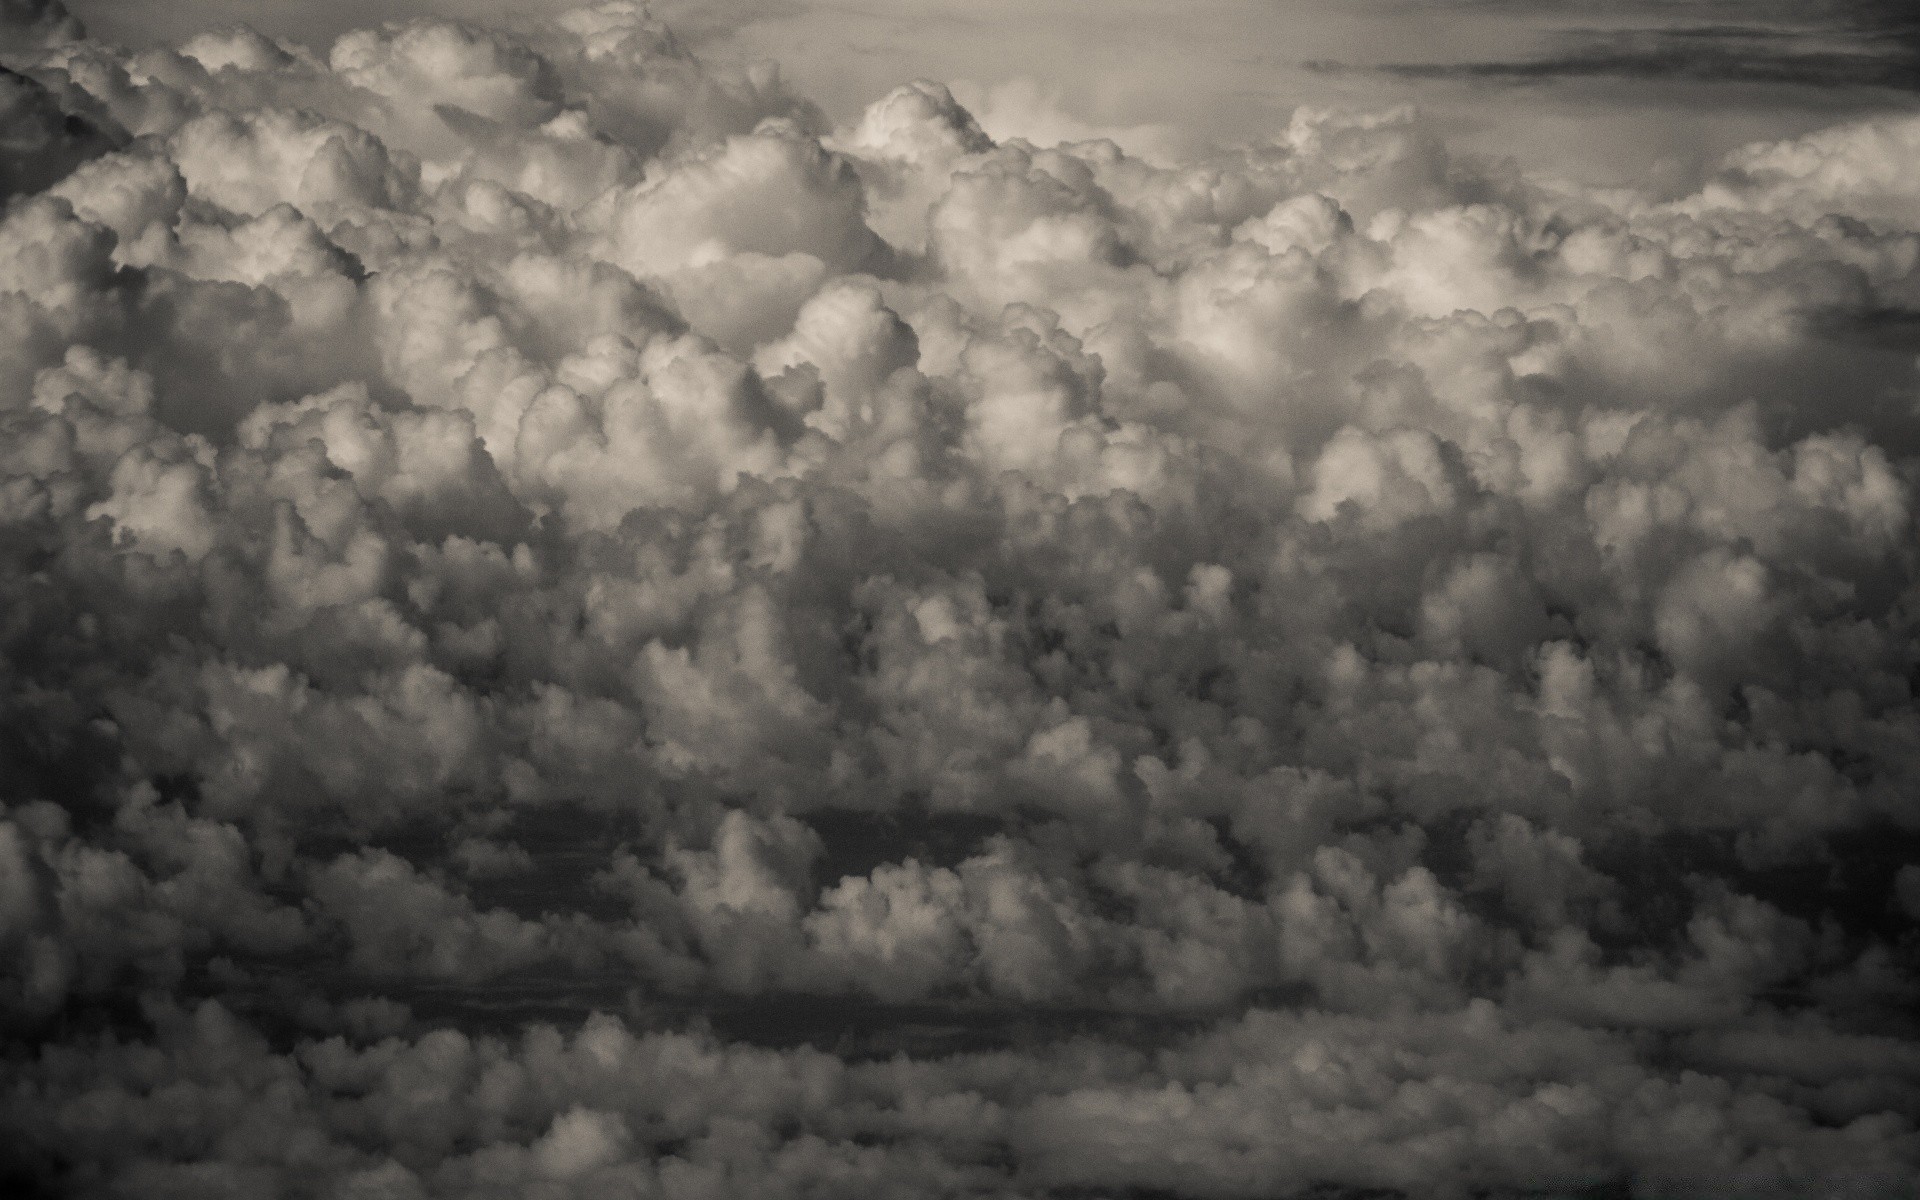 винтаж рабочего стола погода аннотация пейзаж свет природа небо цвет монохромный пространство облако шторм